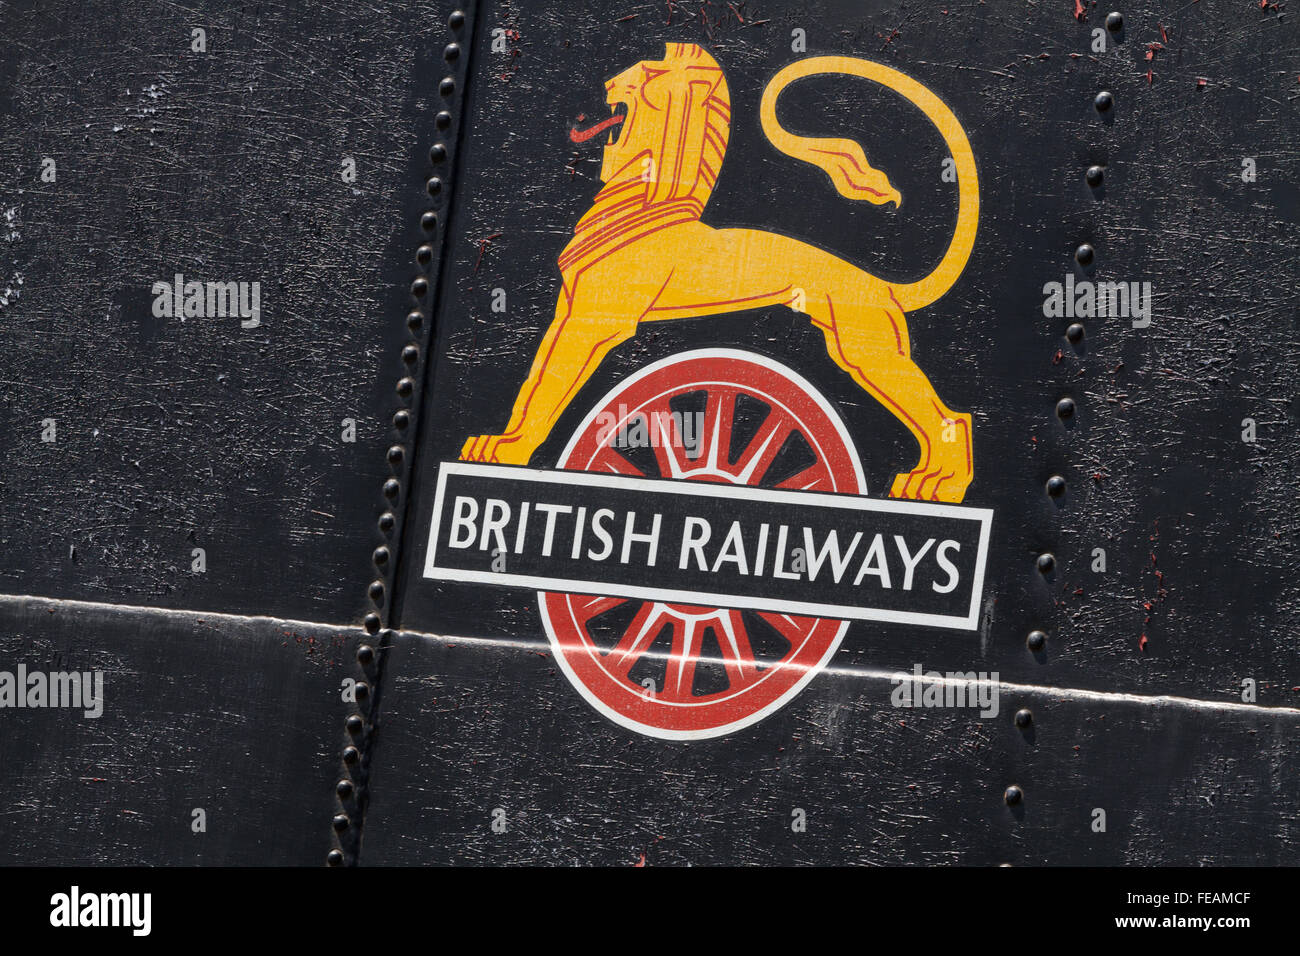 Verwitterte Britische Schiene Radfahren Löwe Logo Tank auf der Out of Service Lokomotive am Peak Bahn, Rost, Nieten und abgenutzte pa Stockfoto